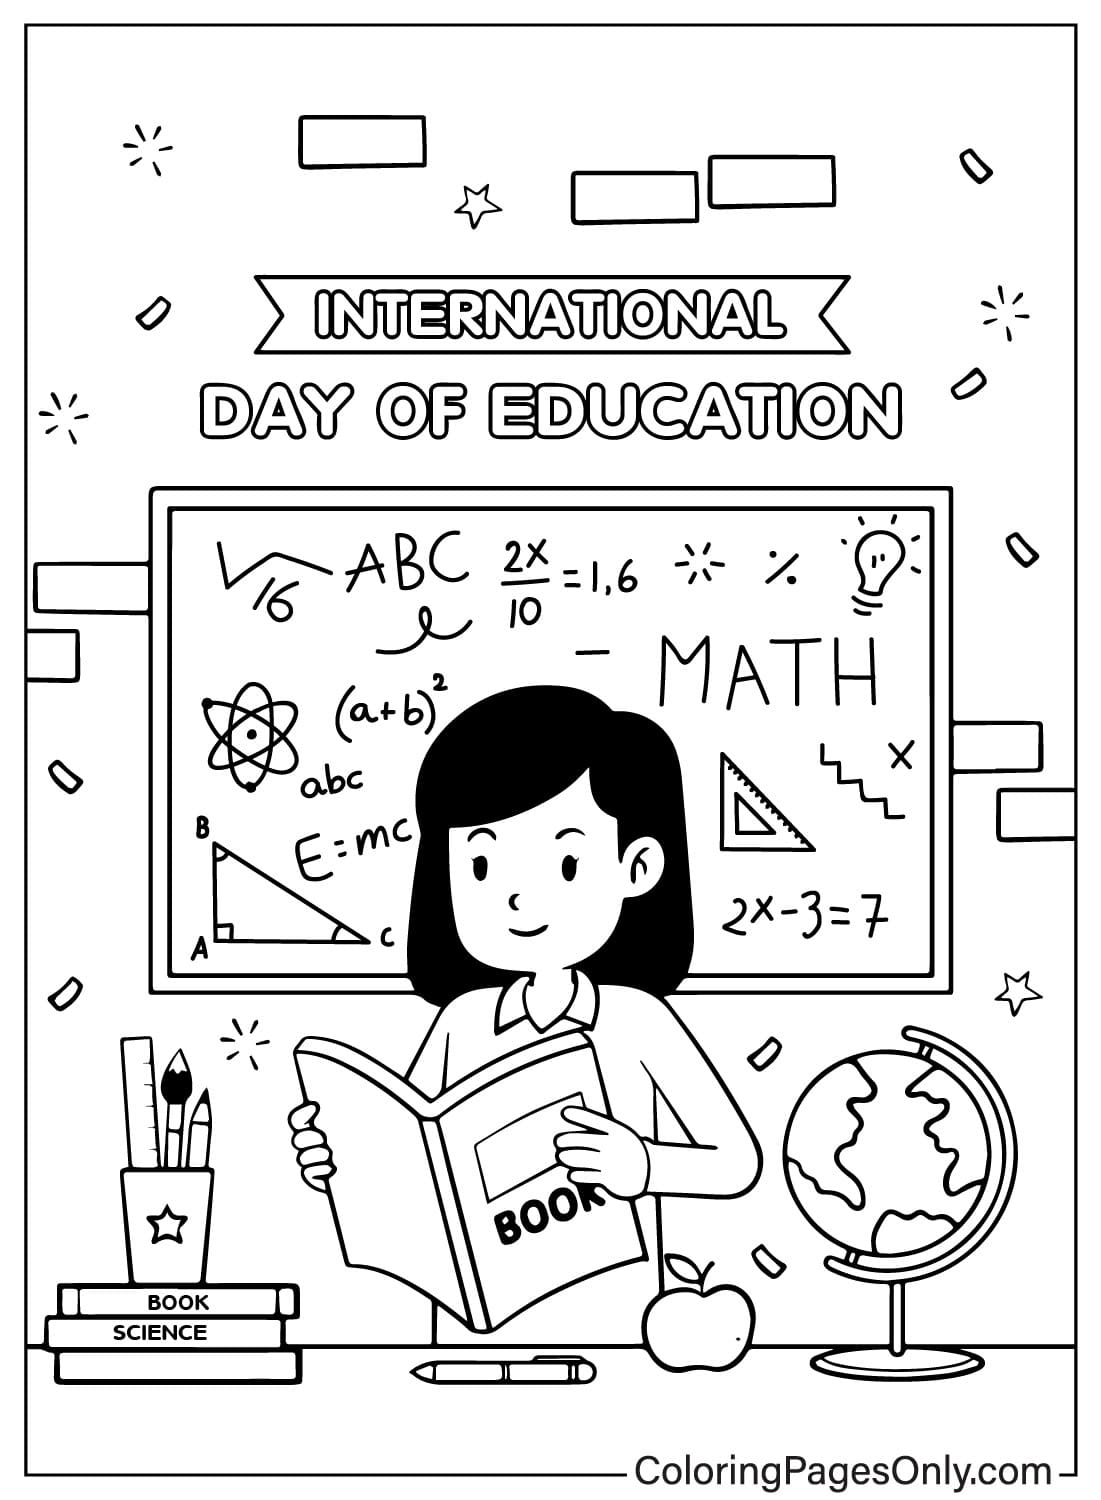 Hoja para colorear del Día Internacional de la Educación del Día Internacional de la Educación